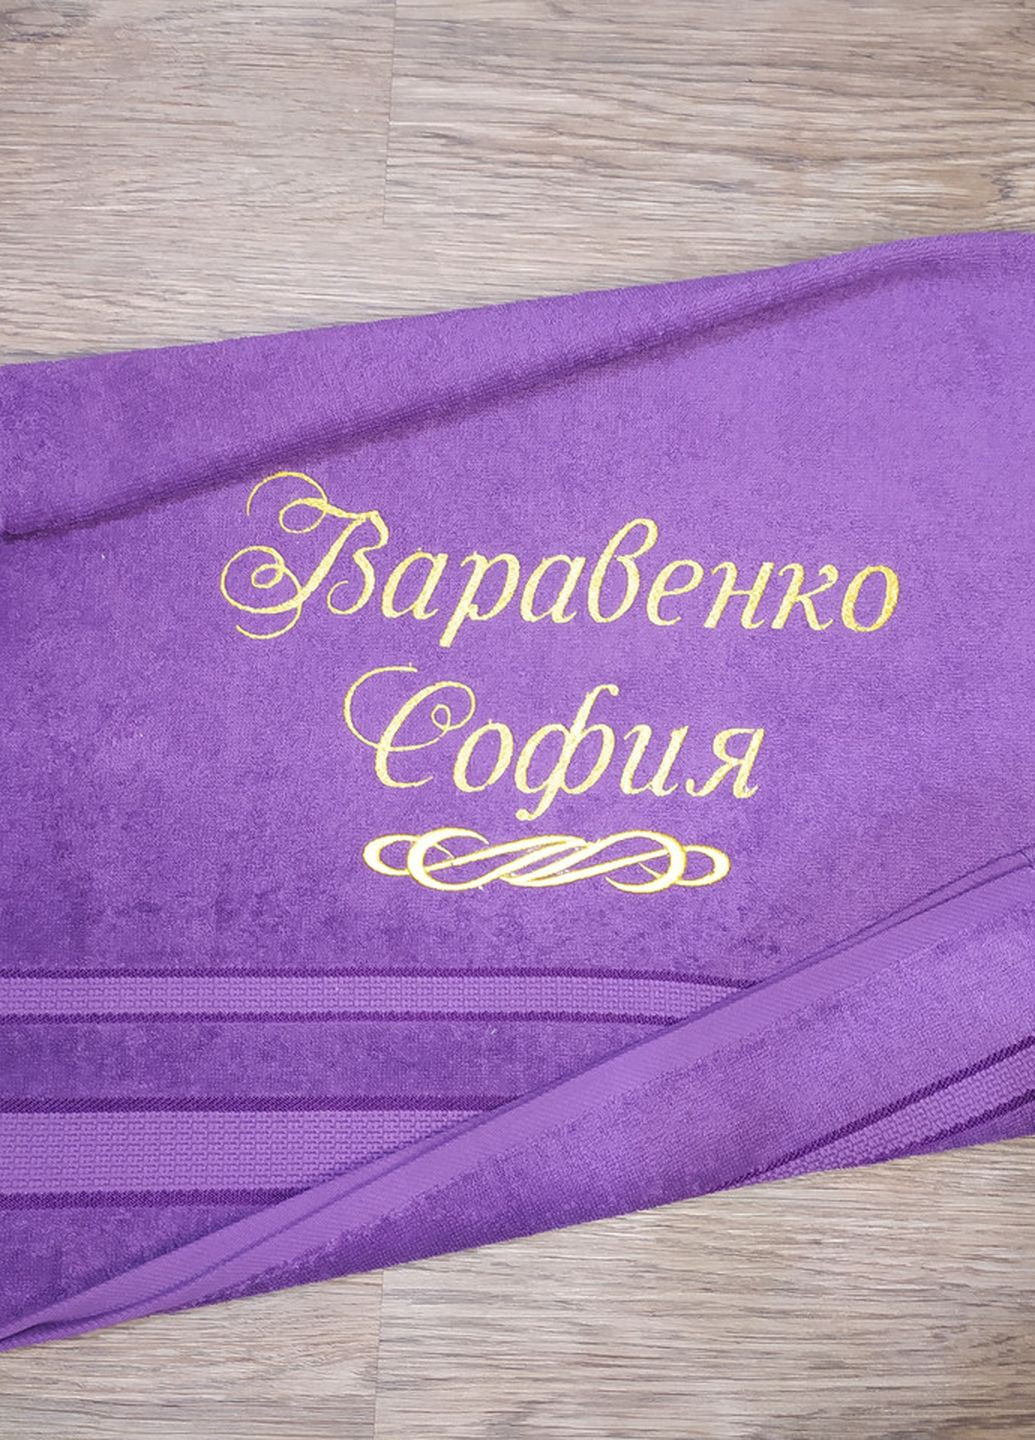 No Brand полотенце с именной вышивкой махровое лицевое 50*90 фиолетовый софия 00380 однотонный фиолетовый производство - Украина